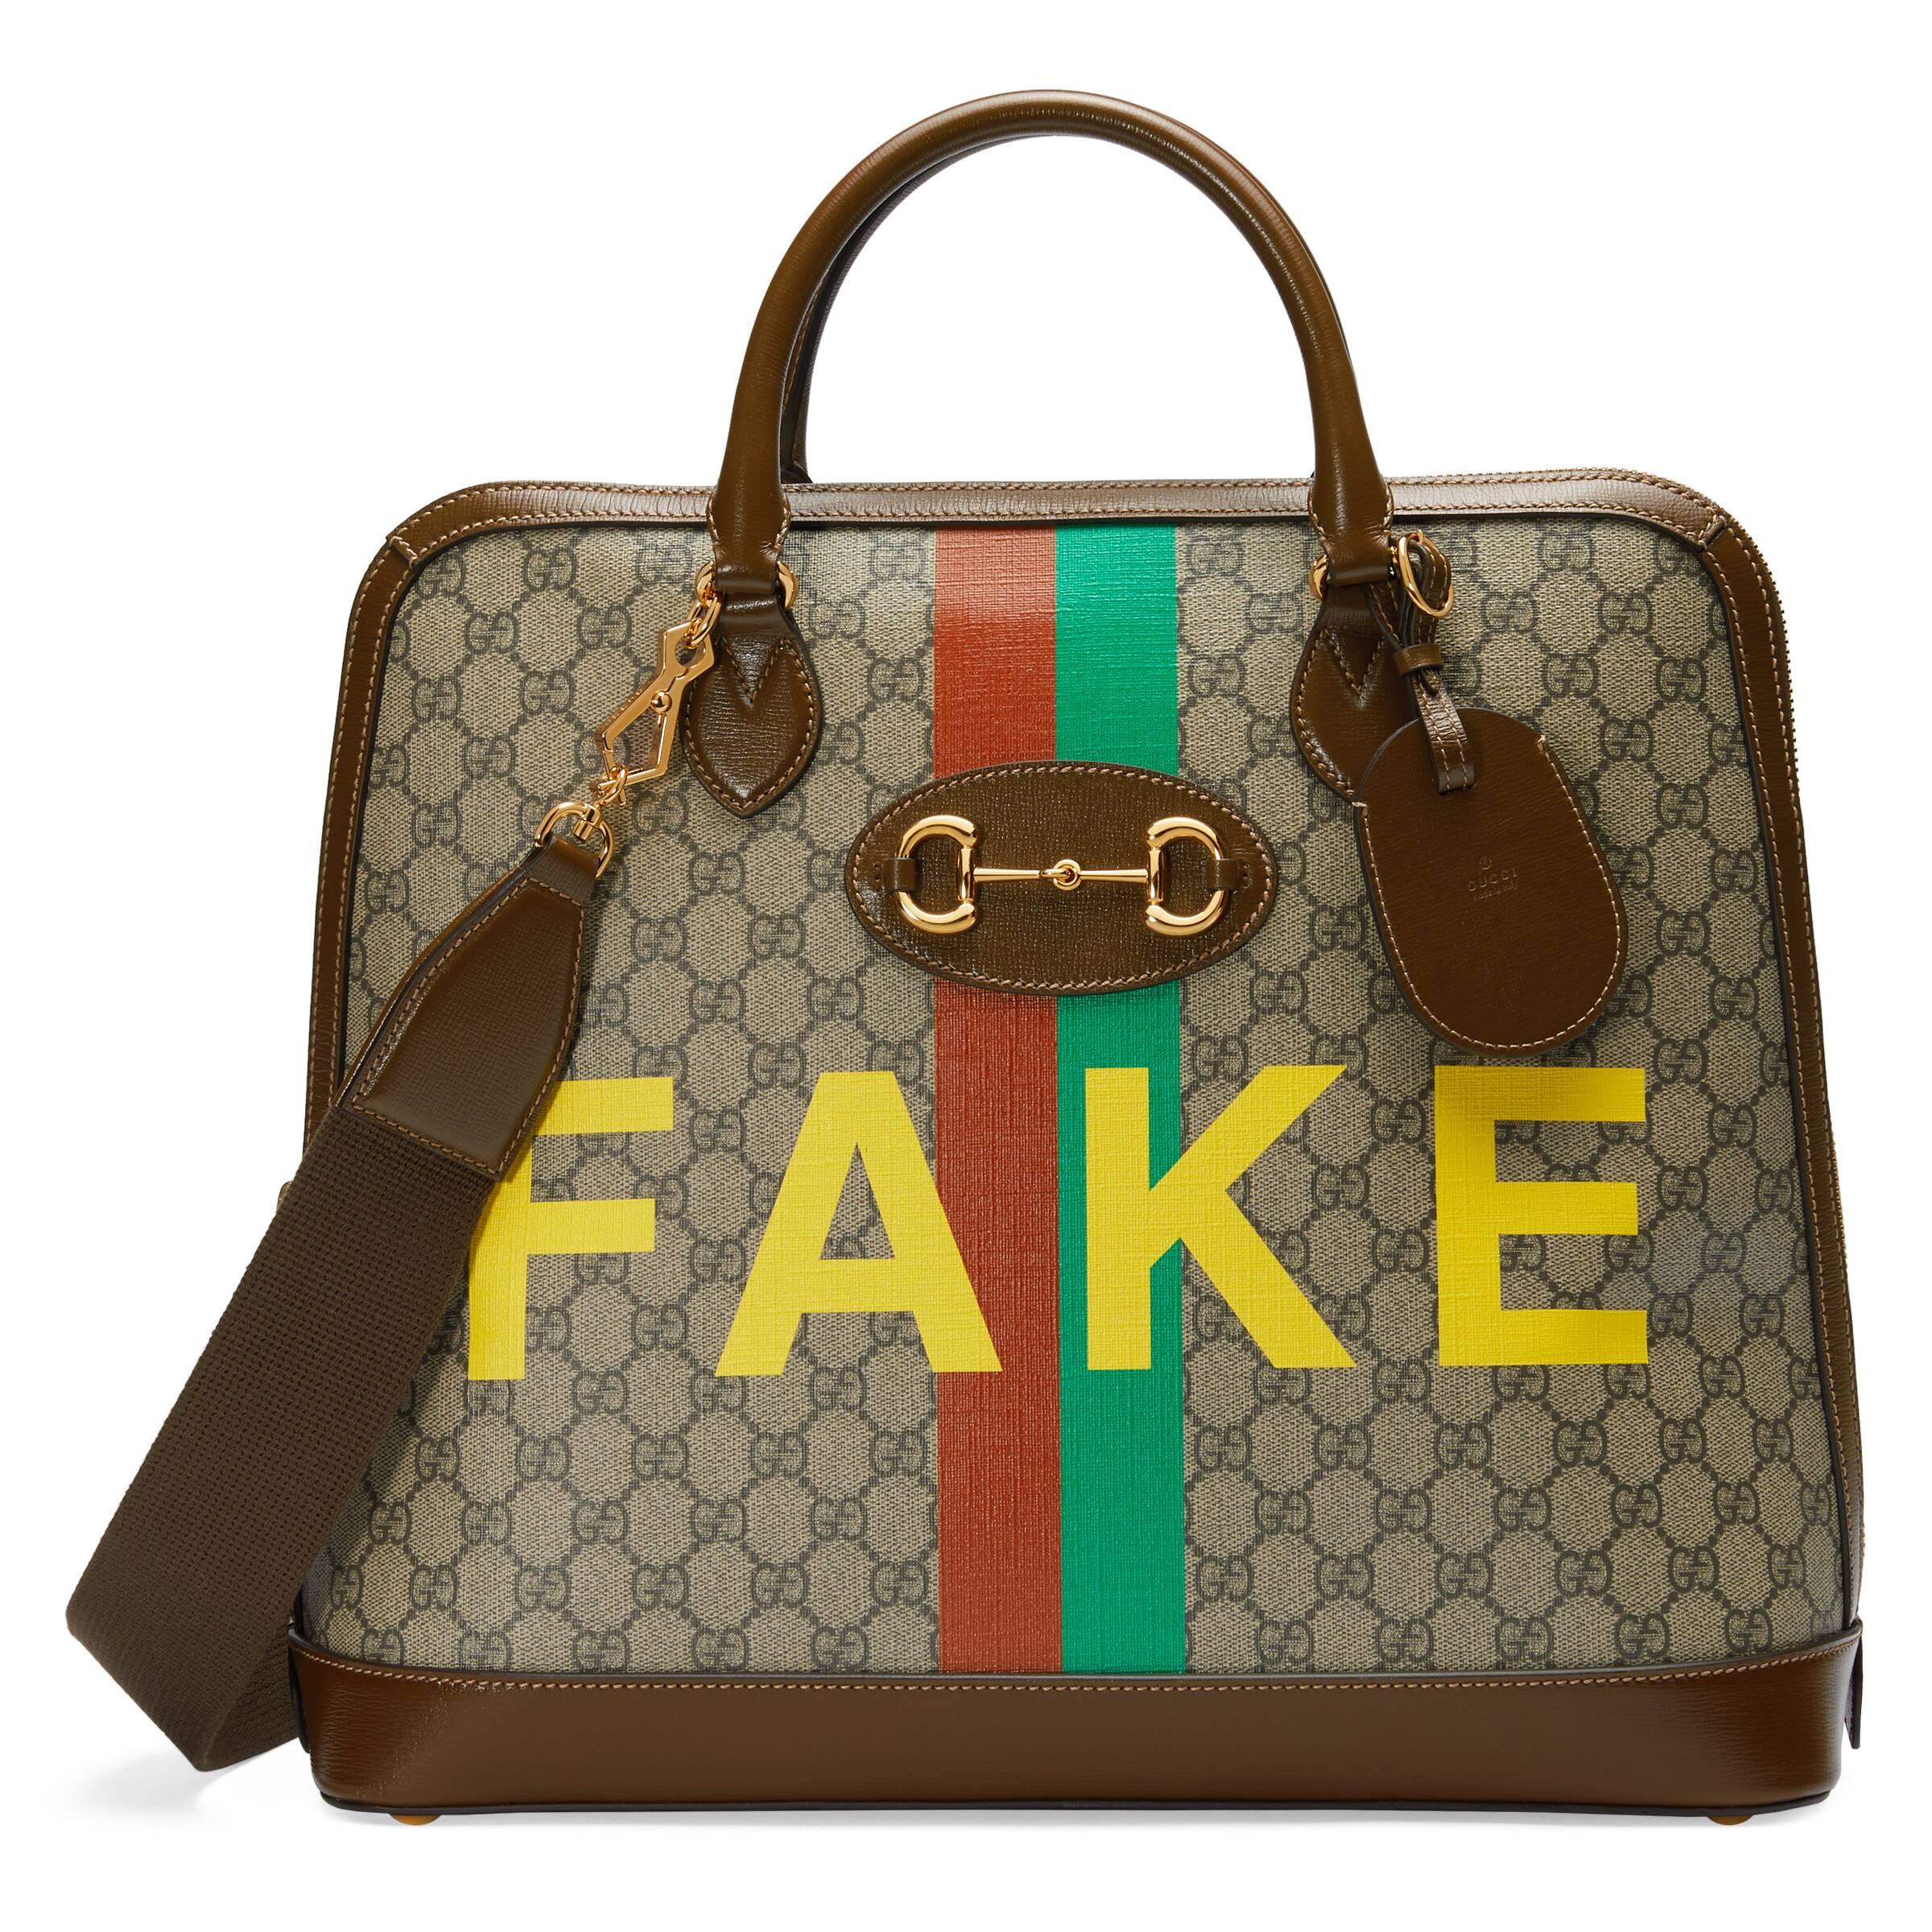 Gucci Handbag Real Or Fake | IQS Executive